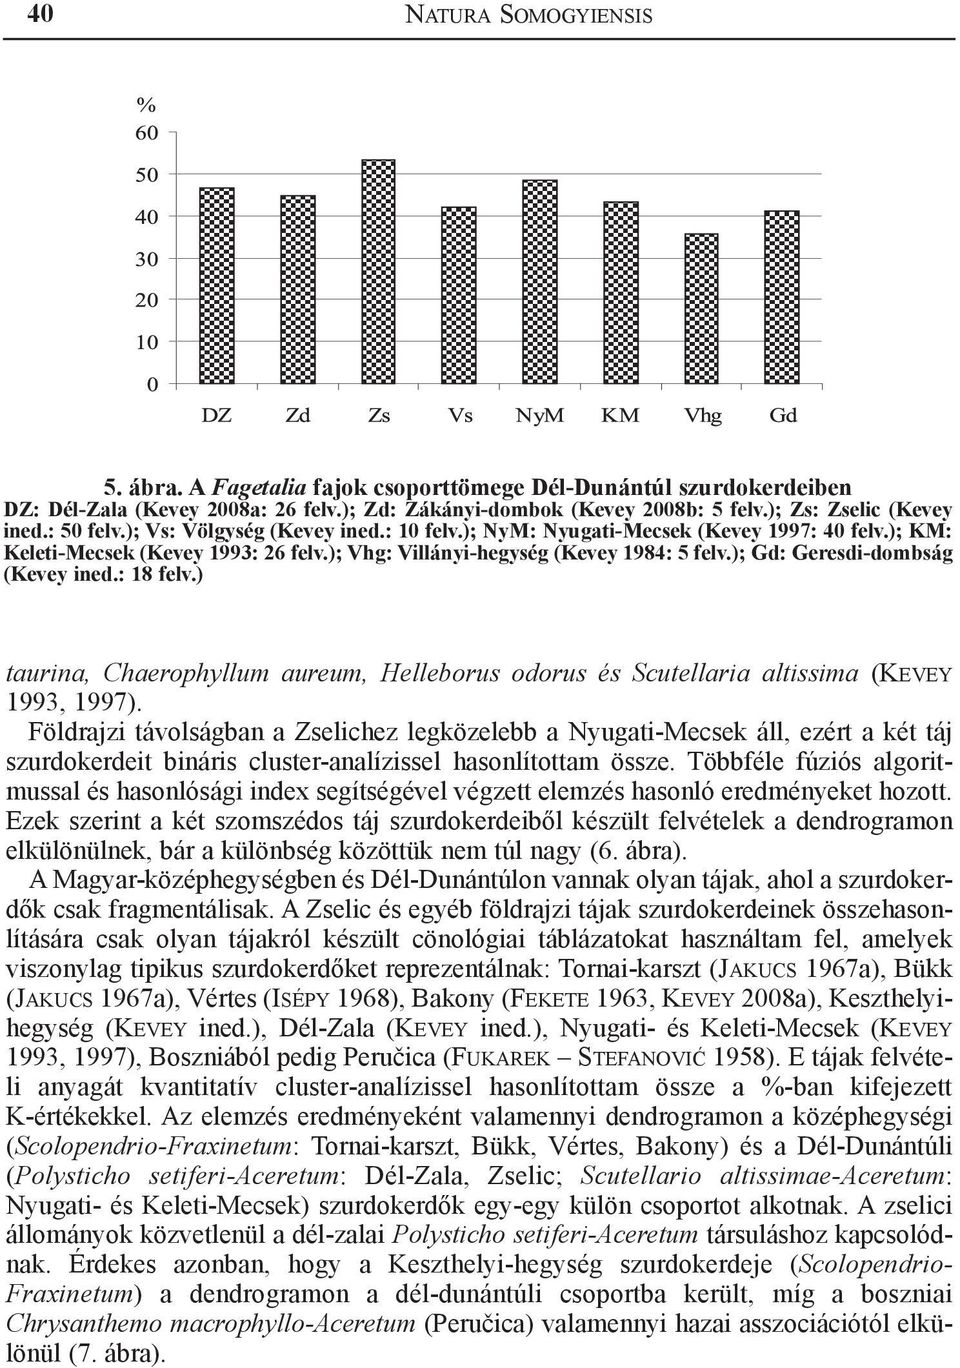 ); Gd: Geresdi-dombság (Kevey ined.: 18 felv.) taurina, Chaerophyllum aureum, Helleborus odorus és Scutellaria altissima (Kevey 1993, 1997).